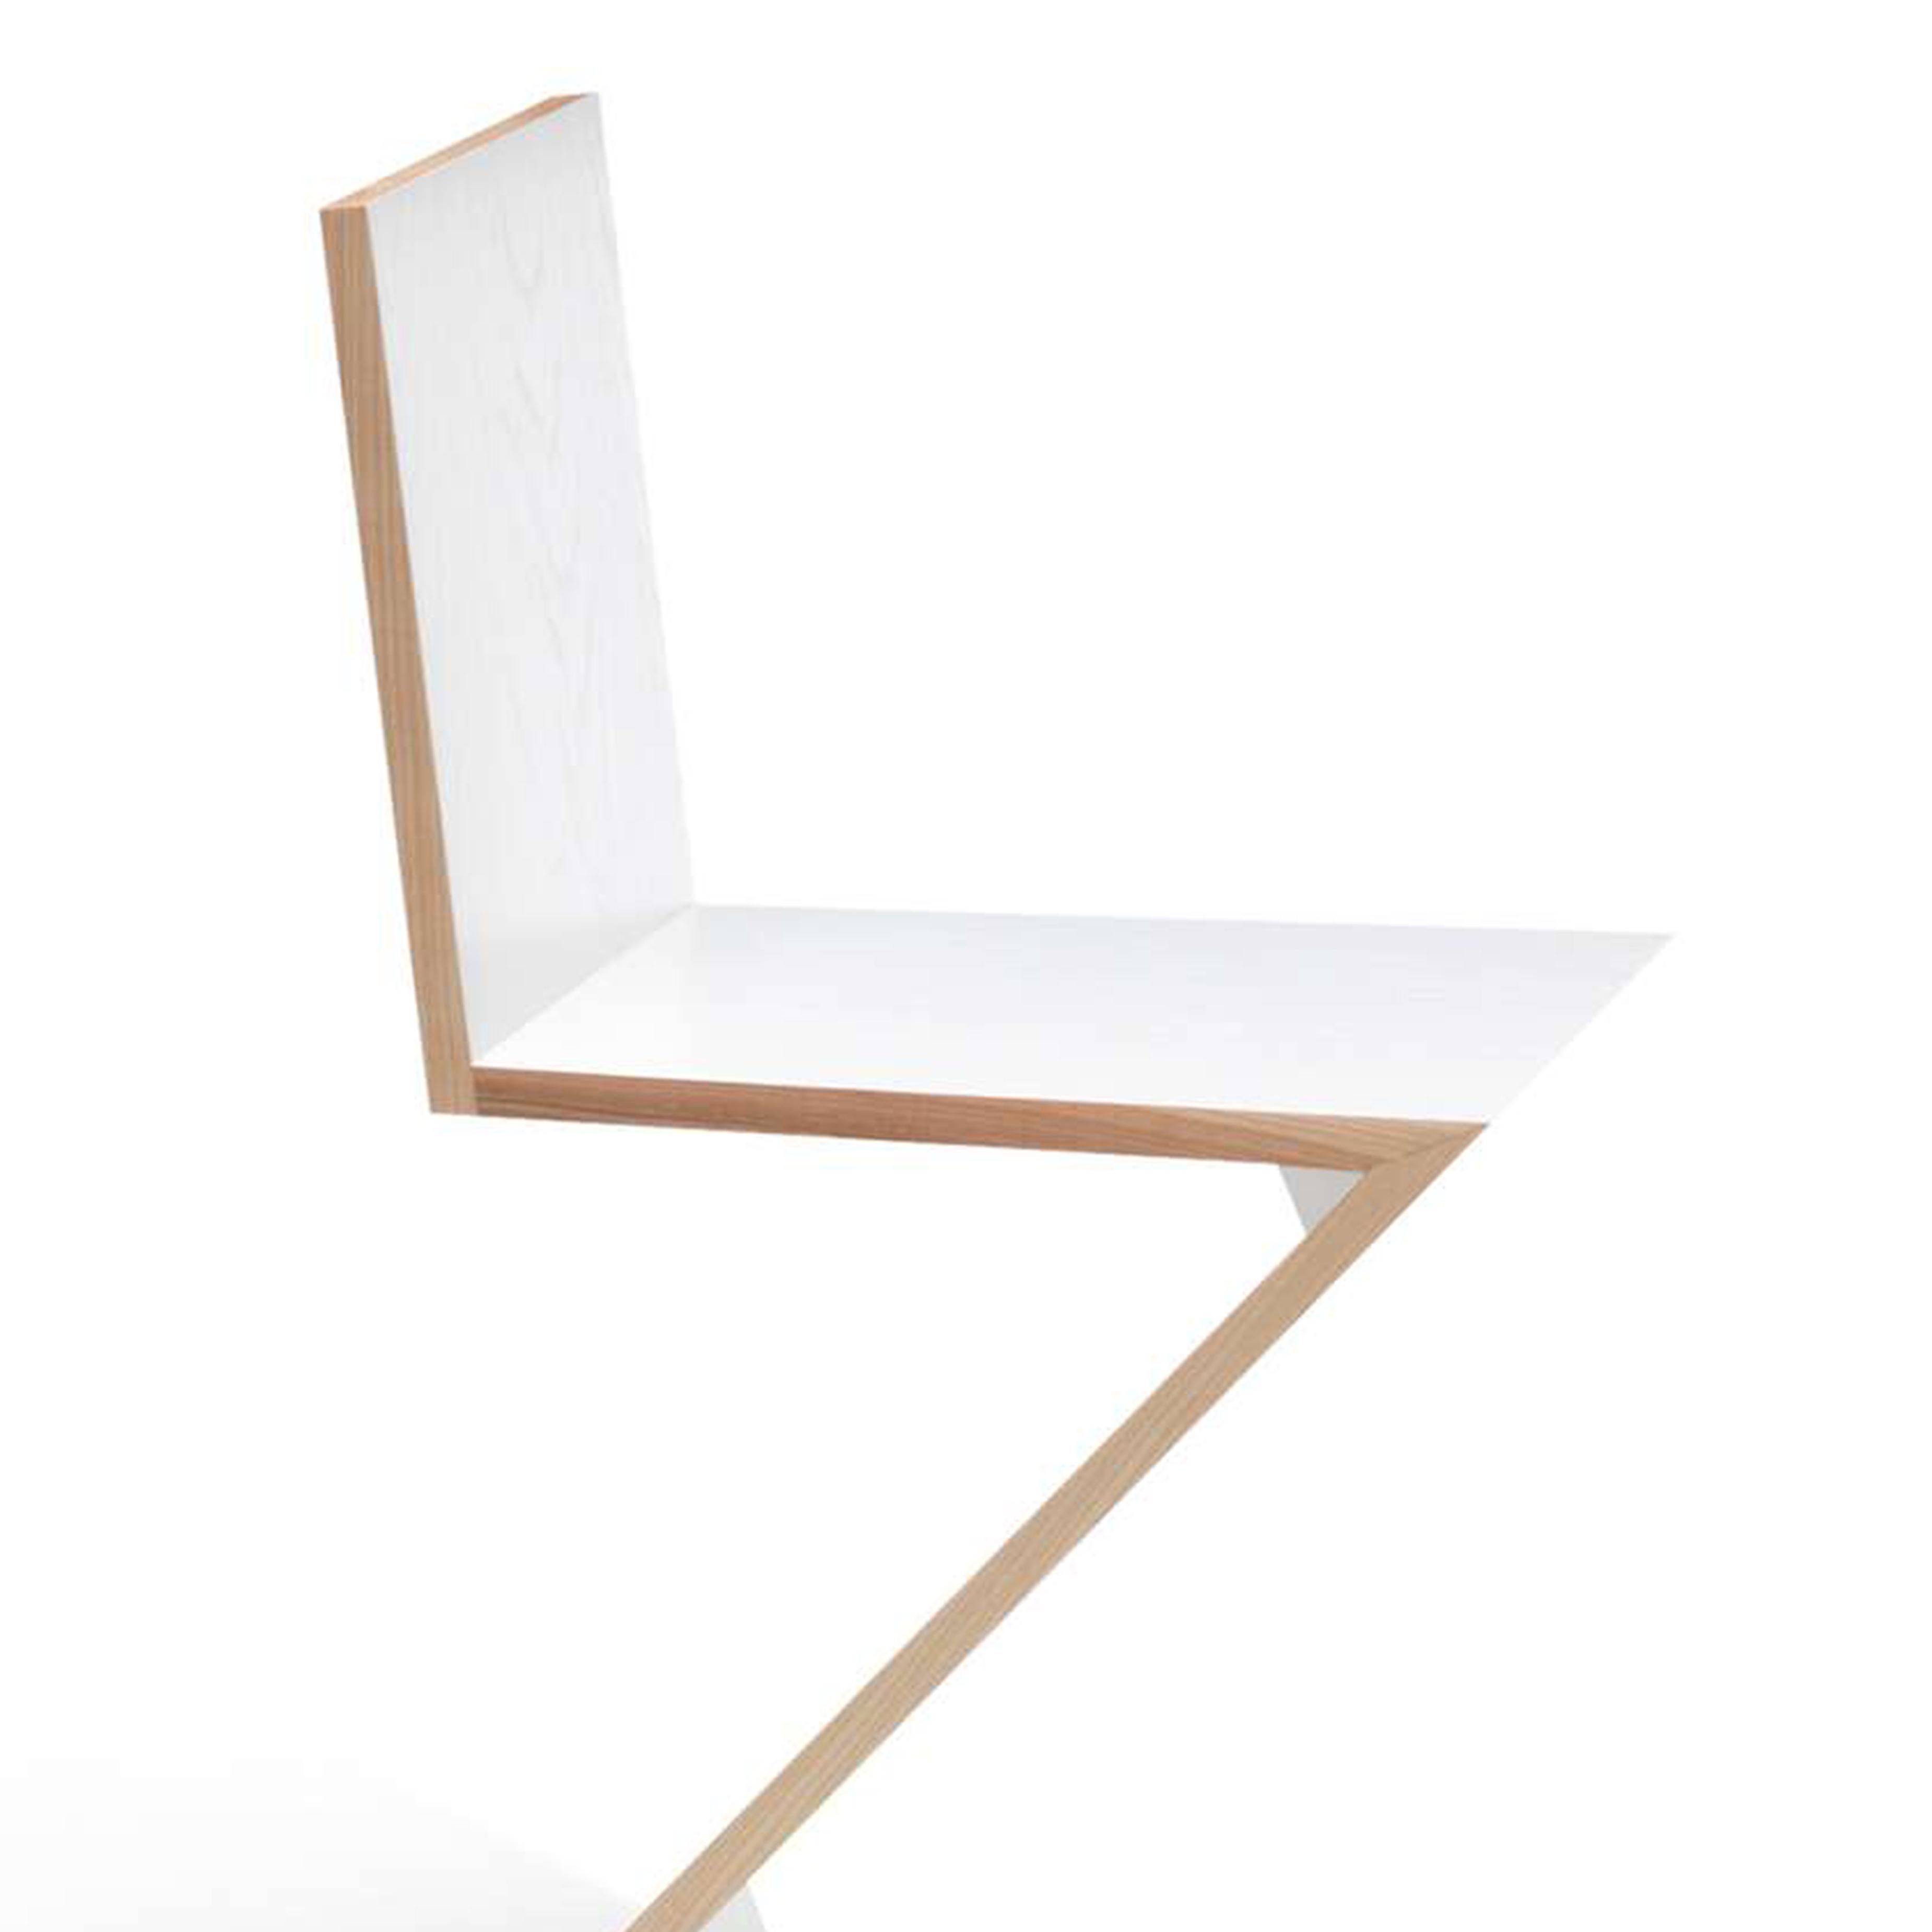 Chaise conçue par Gerrit Thomas Rietveld en 1934. Relancé en 1973/ 2011.
Fabriqué par Cassina en Italie.

Conçue par Gerrit Rietveld, cette chaise est un exemple précoce de siège en porte-à-faux. Elle est composée de quatre planches de bois